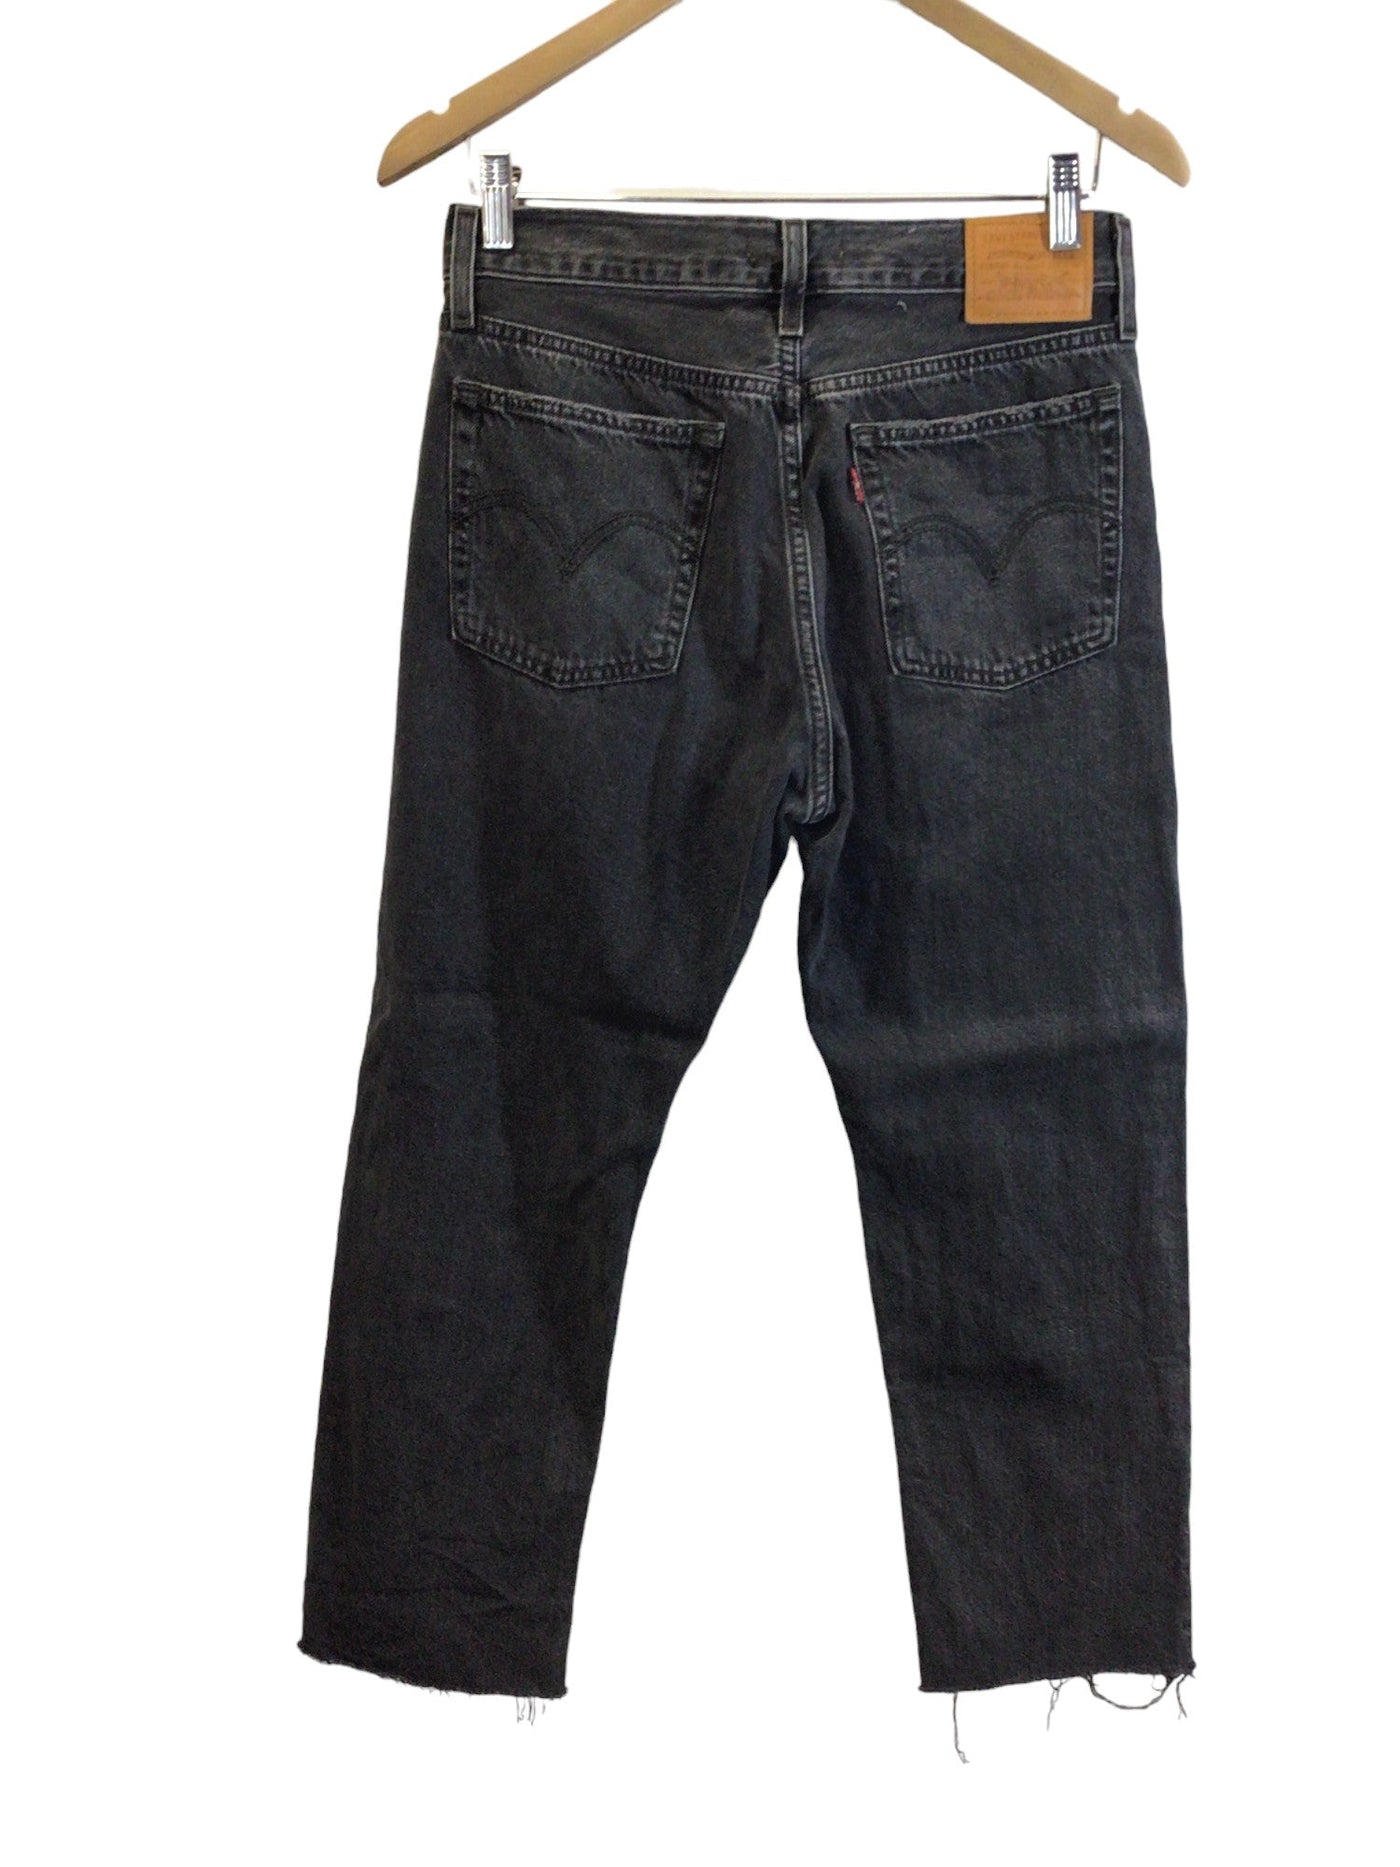 LEVI'S Women Straight-Legged Jeans Regular fit in Gray - Size 28x26 | 25.99 $ KOOP